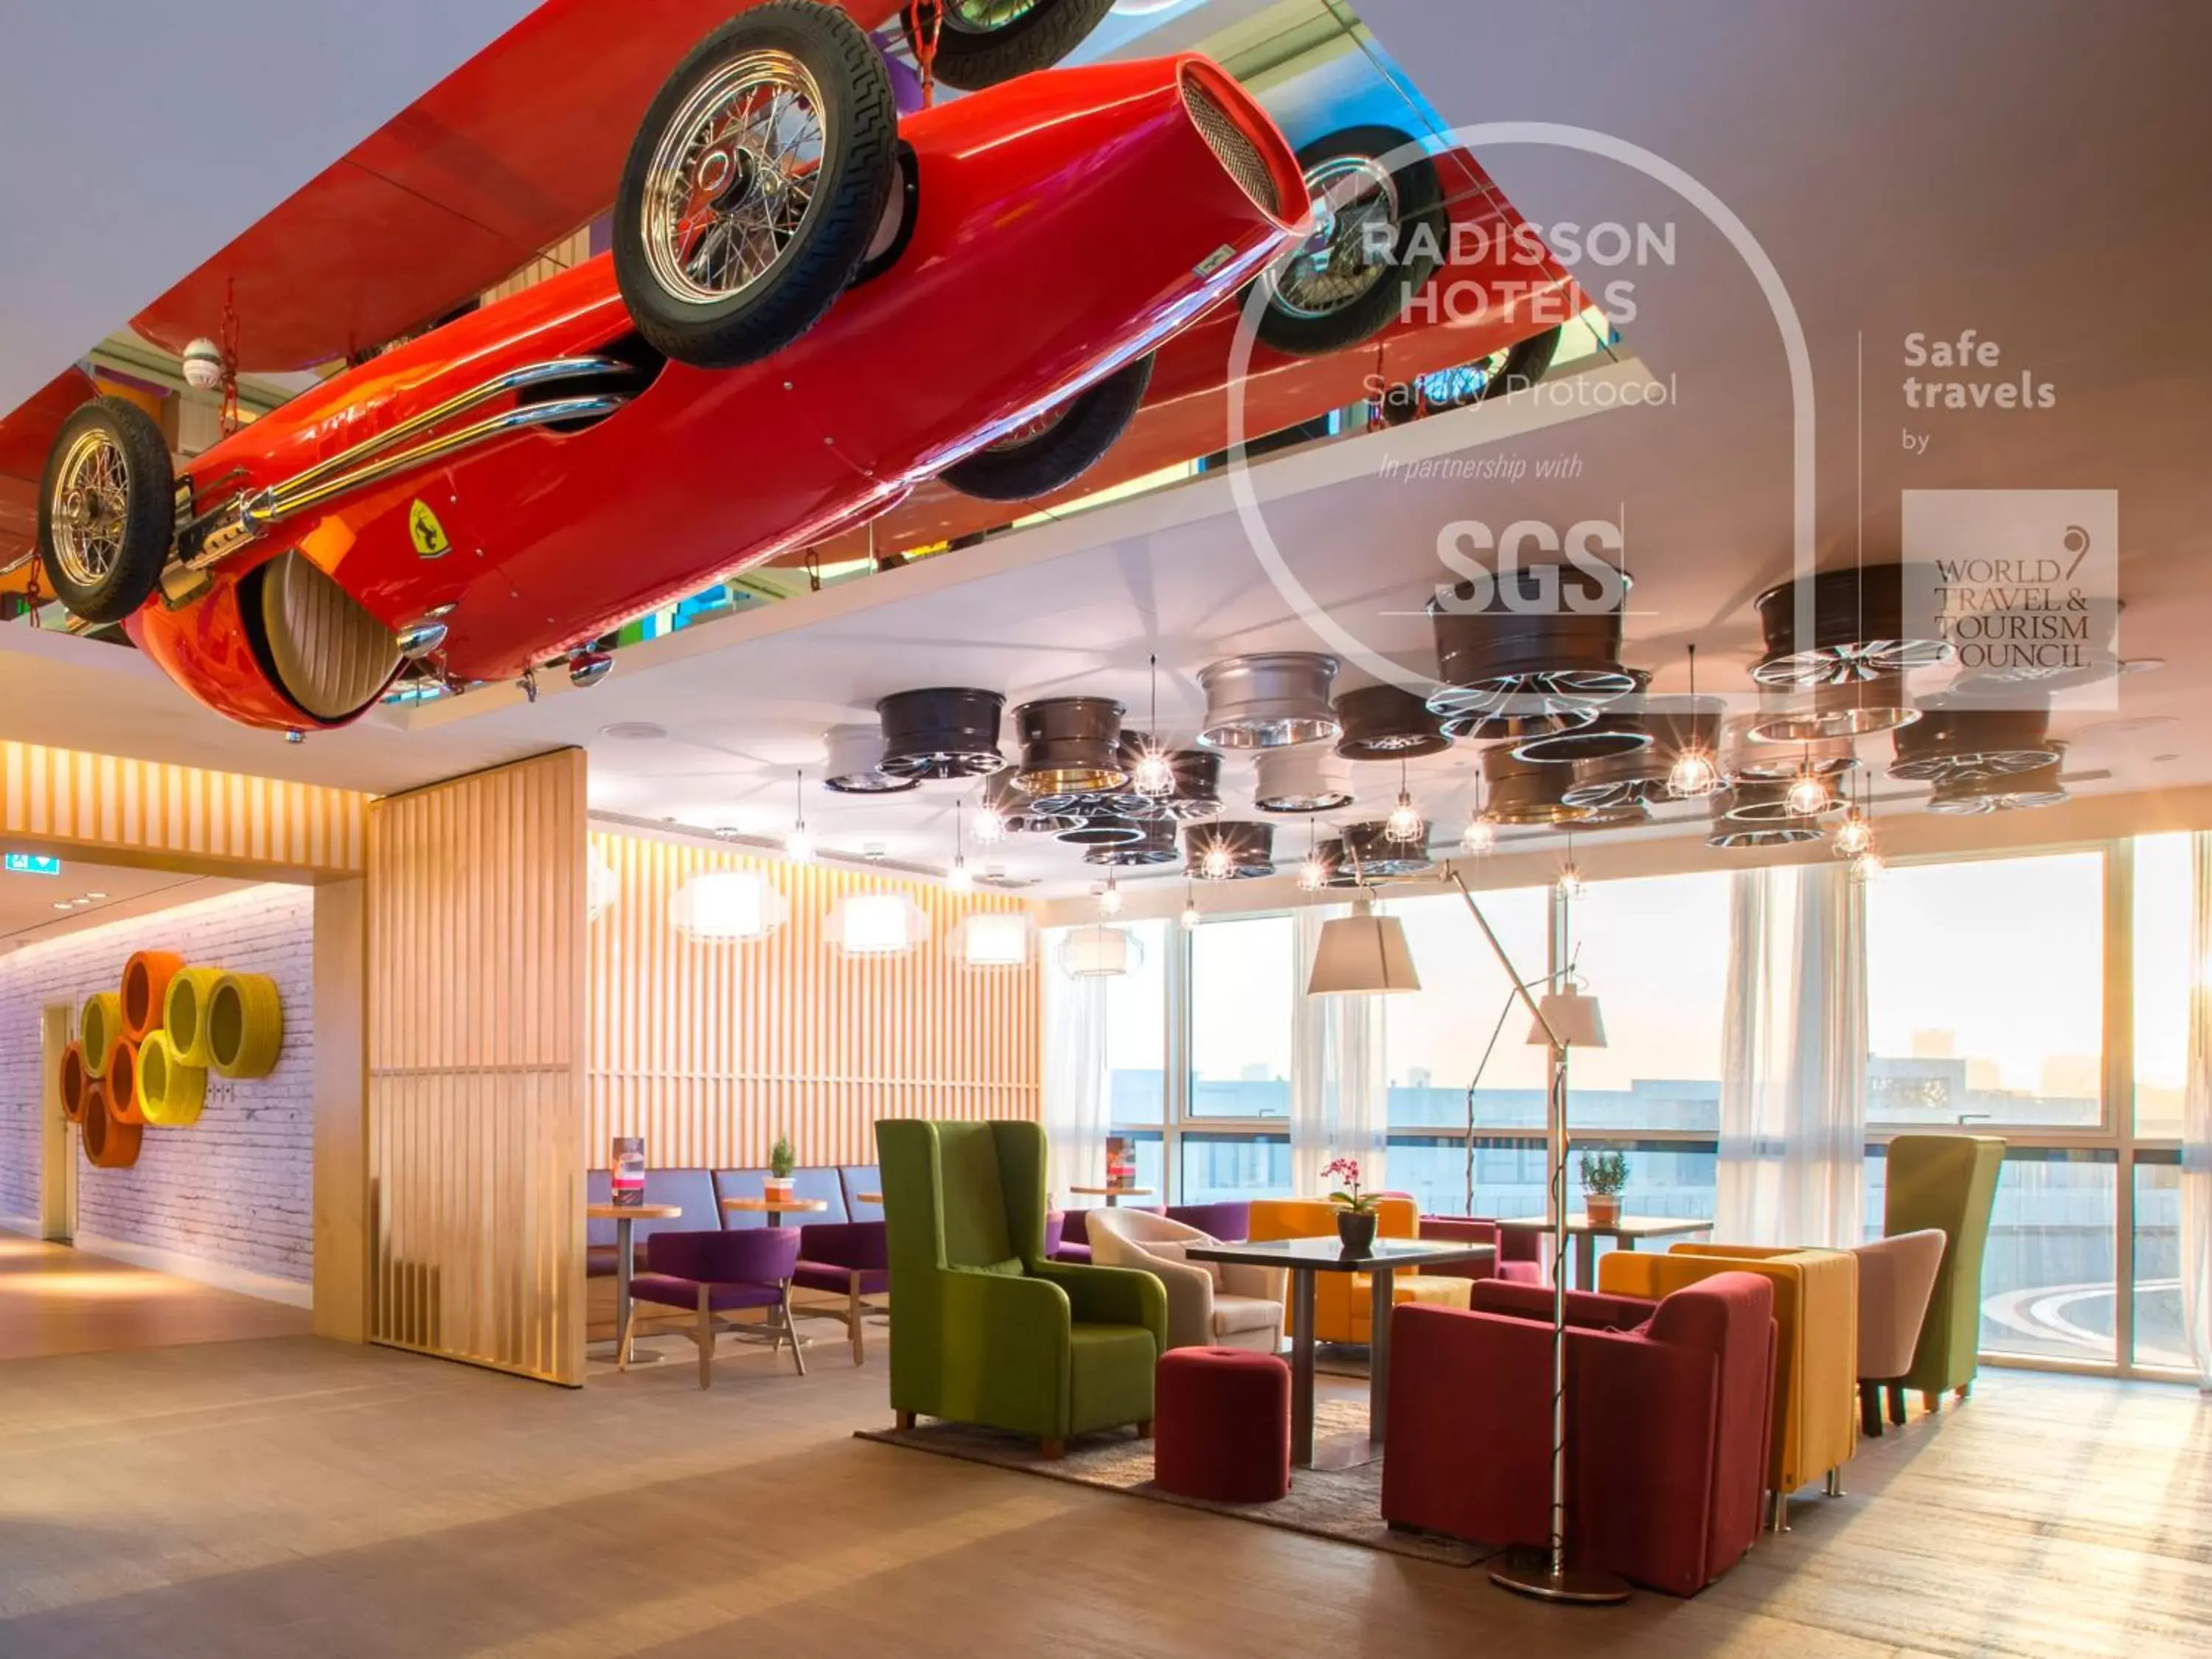 Lobby or reception in Park Inn by Radisson Dubai Motor City